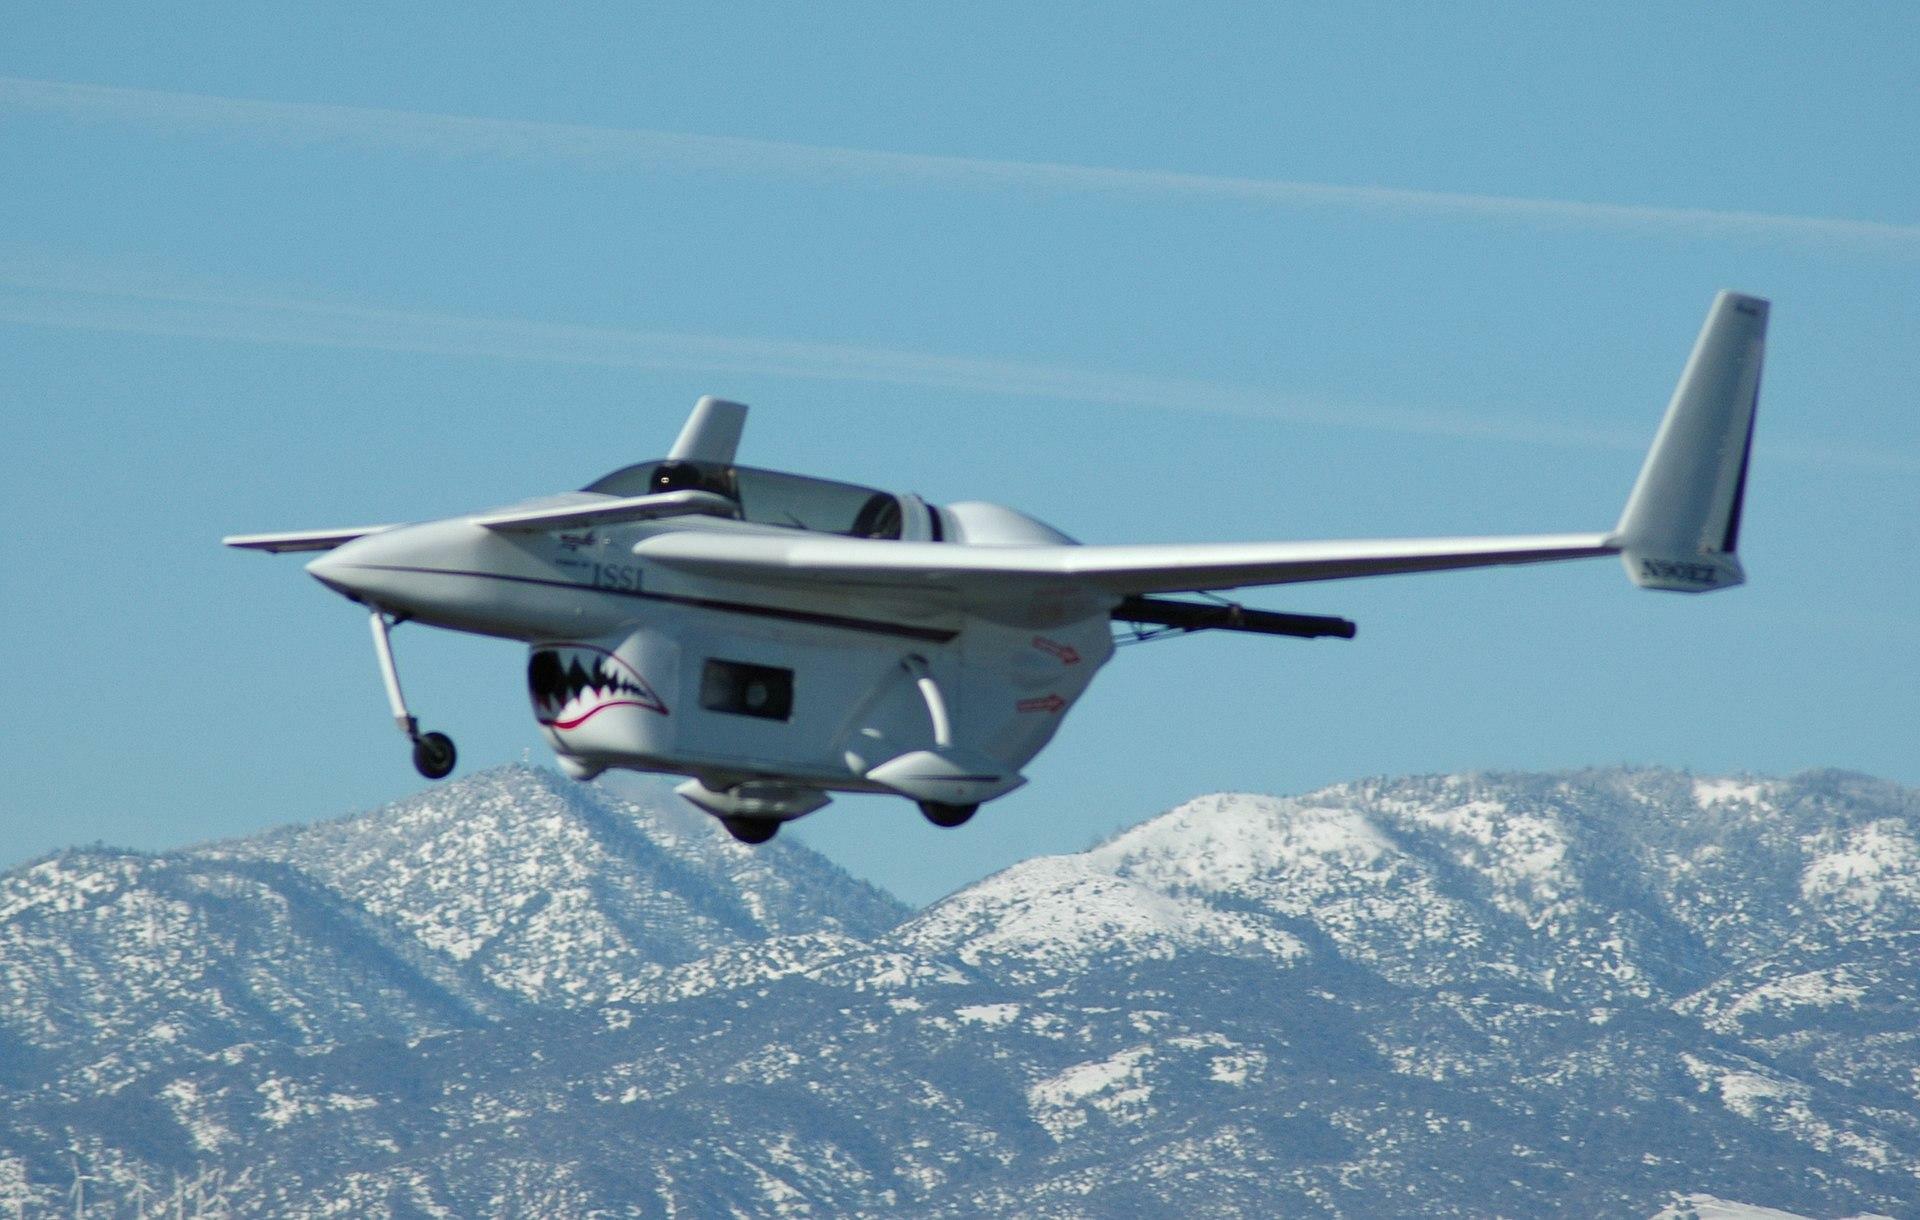 飛行中のデトネーションエンジン搭載ルータン ロング・イージー 出典:Wikipedia